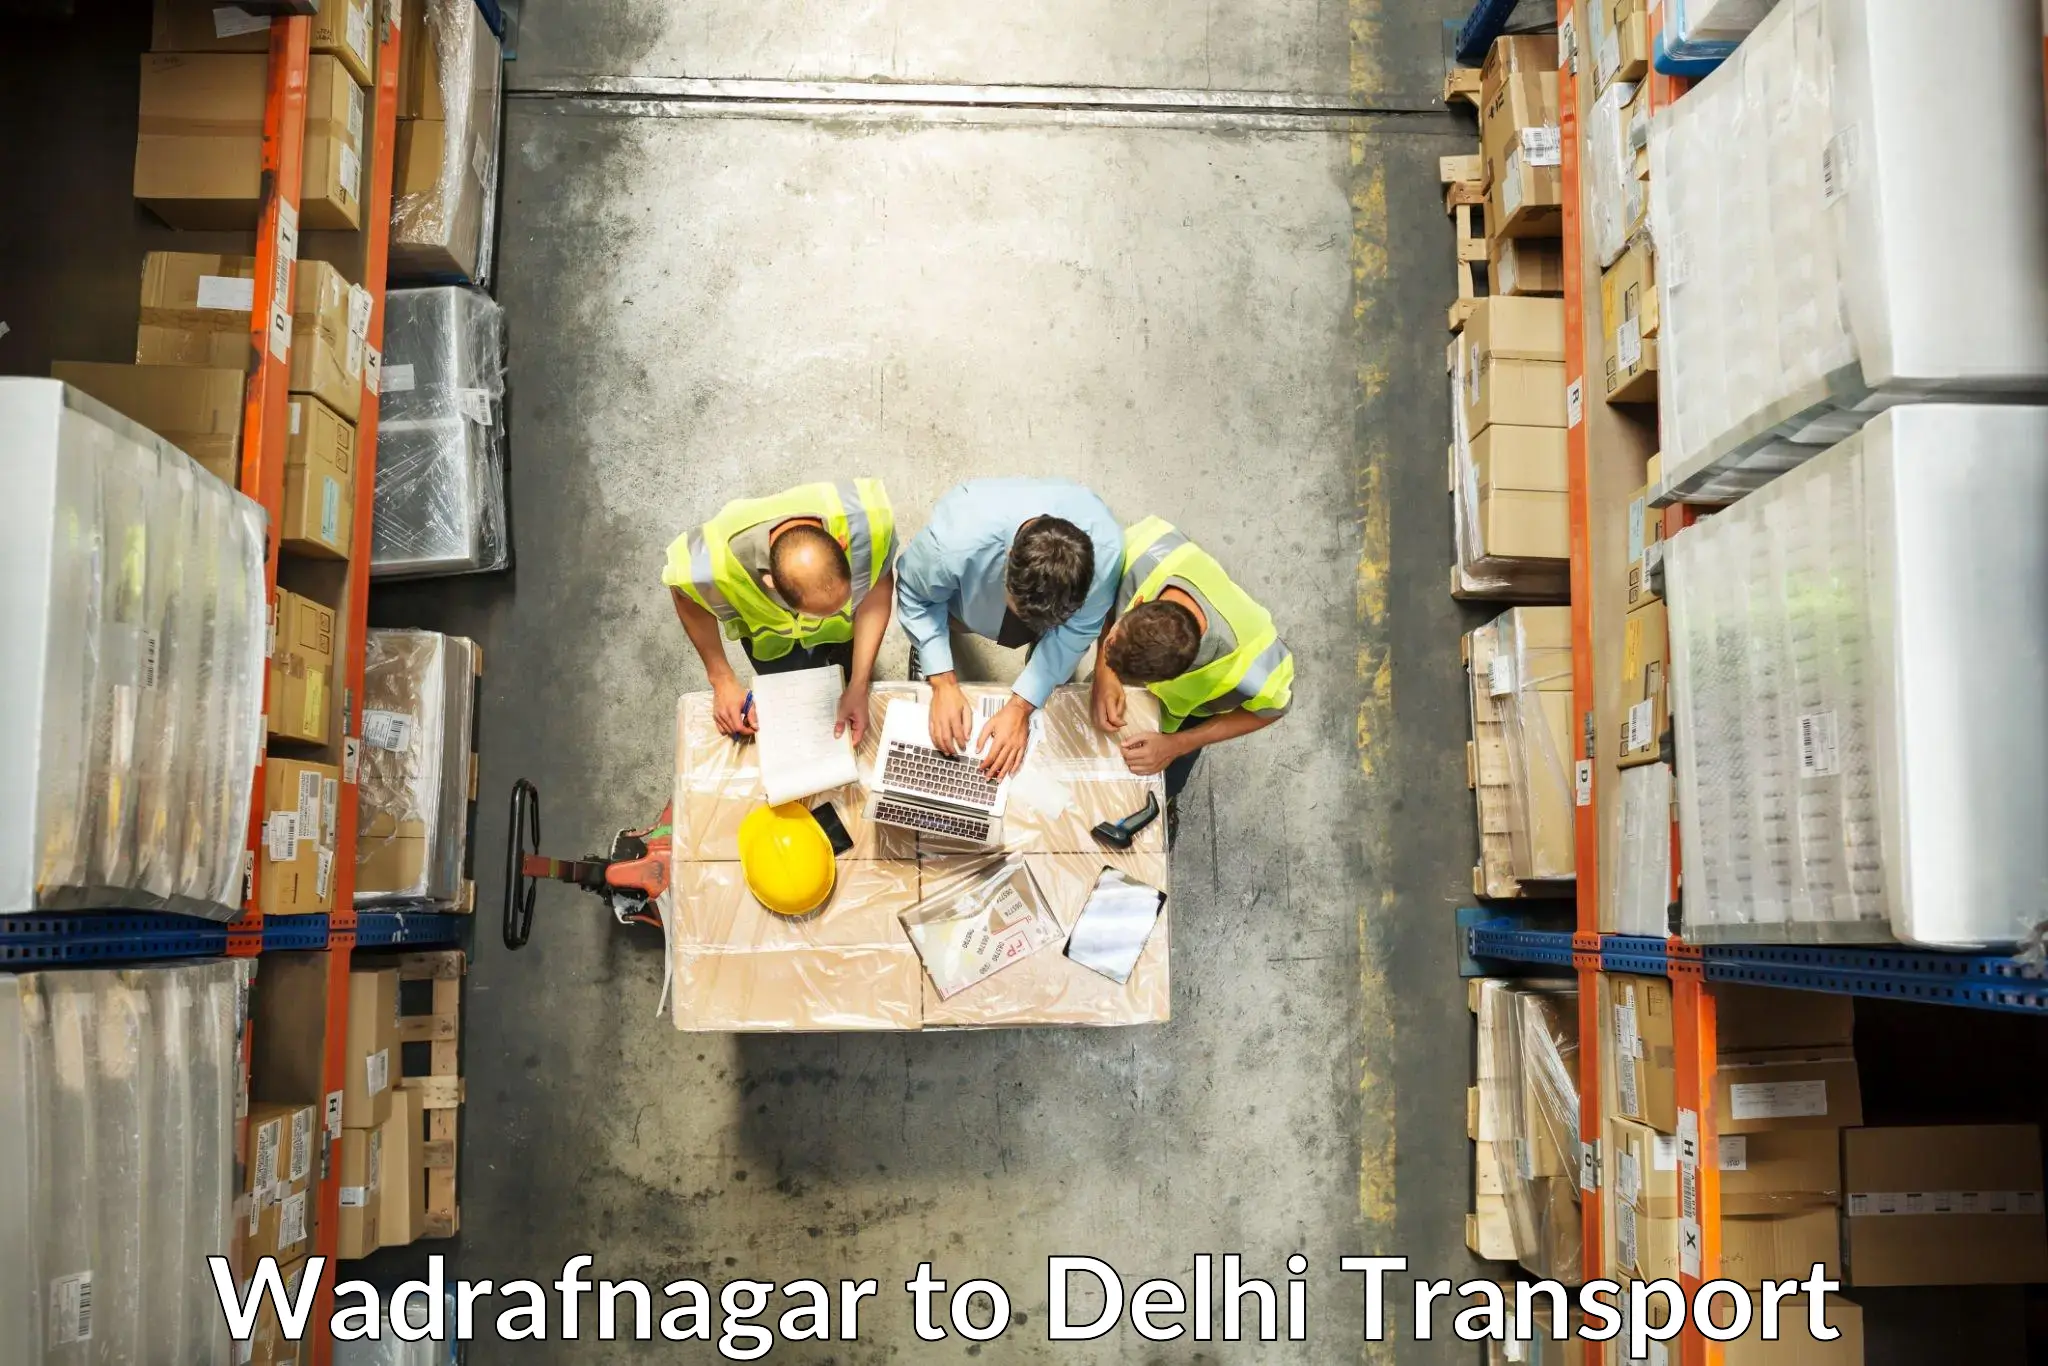 Shipping partner Wadrafnagar to Krishna Nagar